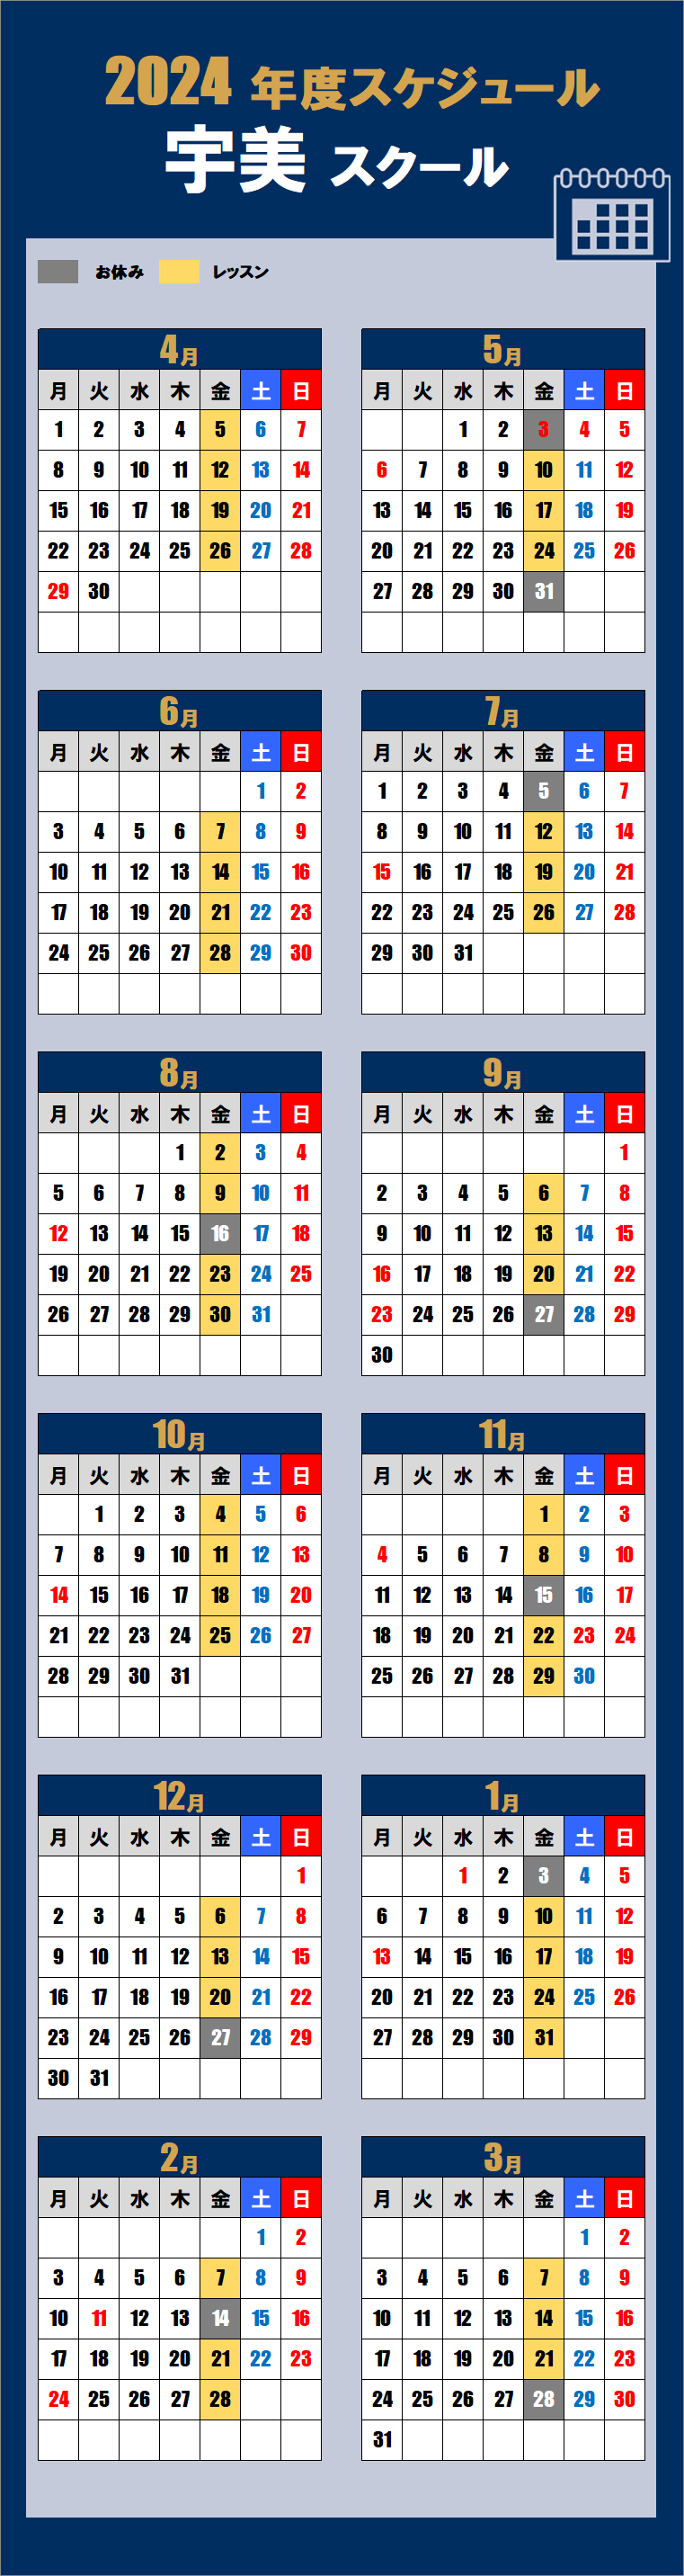 2024宇美スクールカレンダー